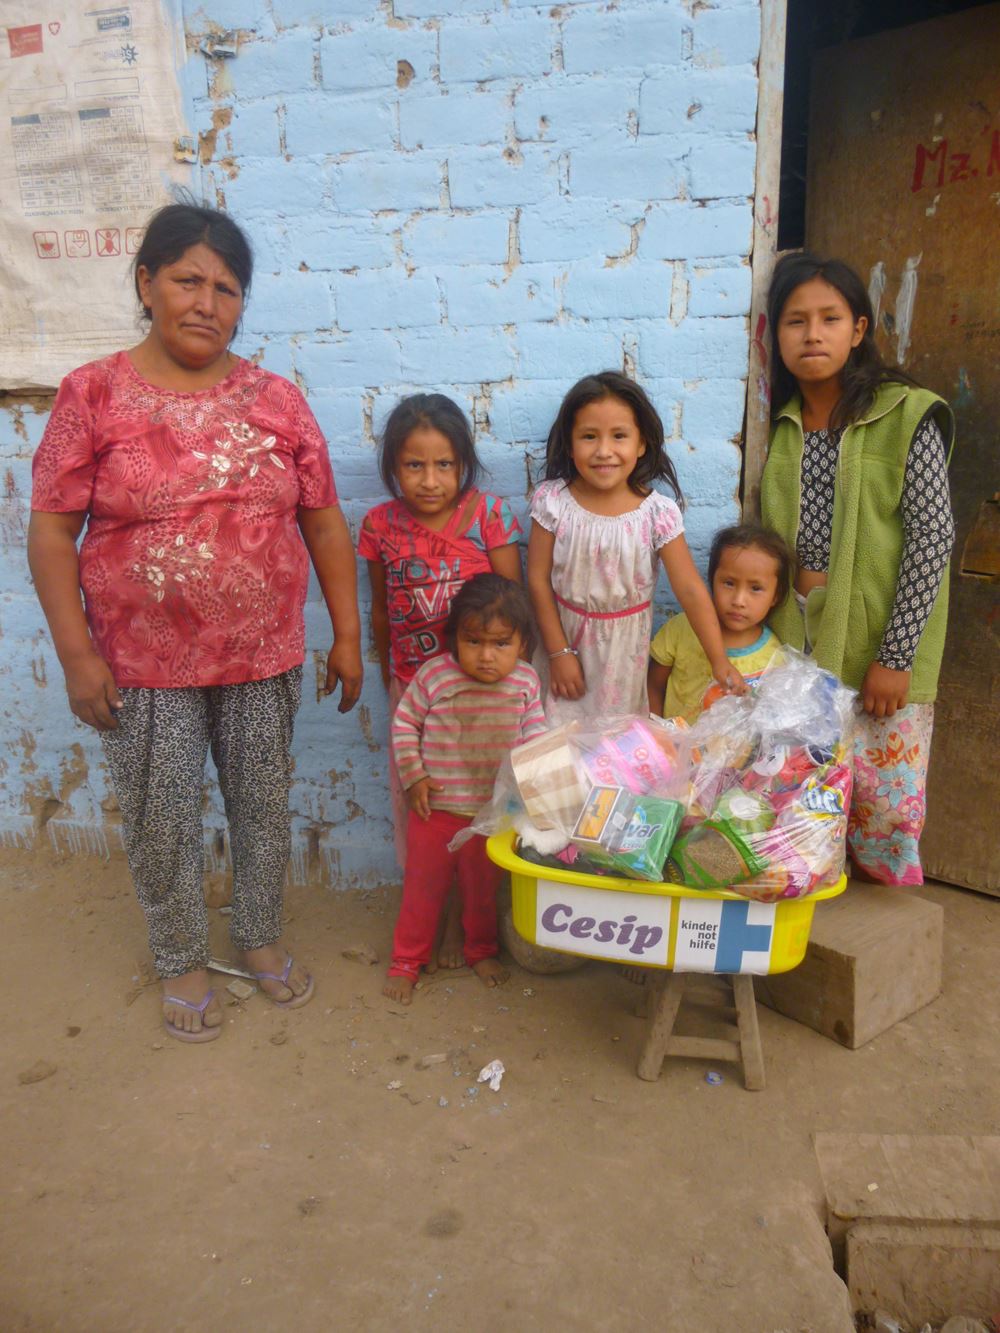 Familie Moran Silva - Verteilung von Hilfsgütern nach der Überschwemmung - Peru nach der Hochwasserkatastrophe im März 2017